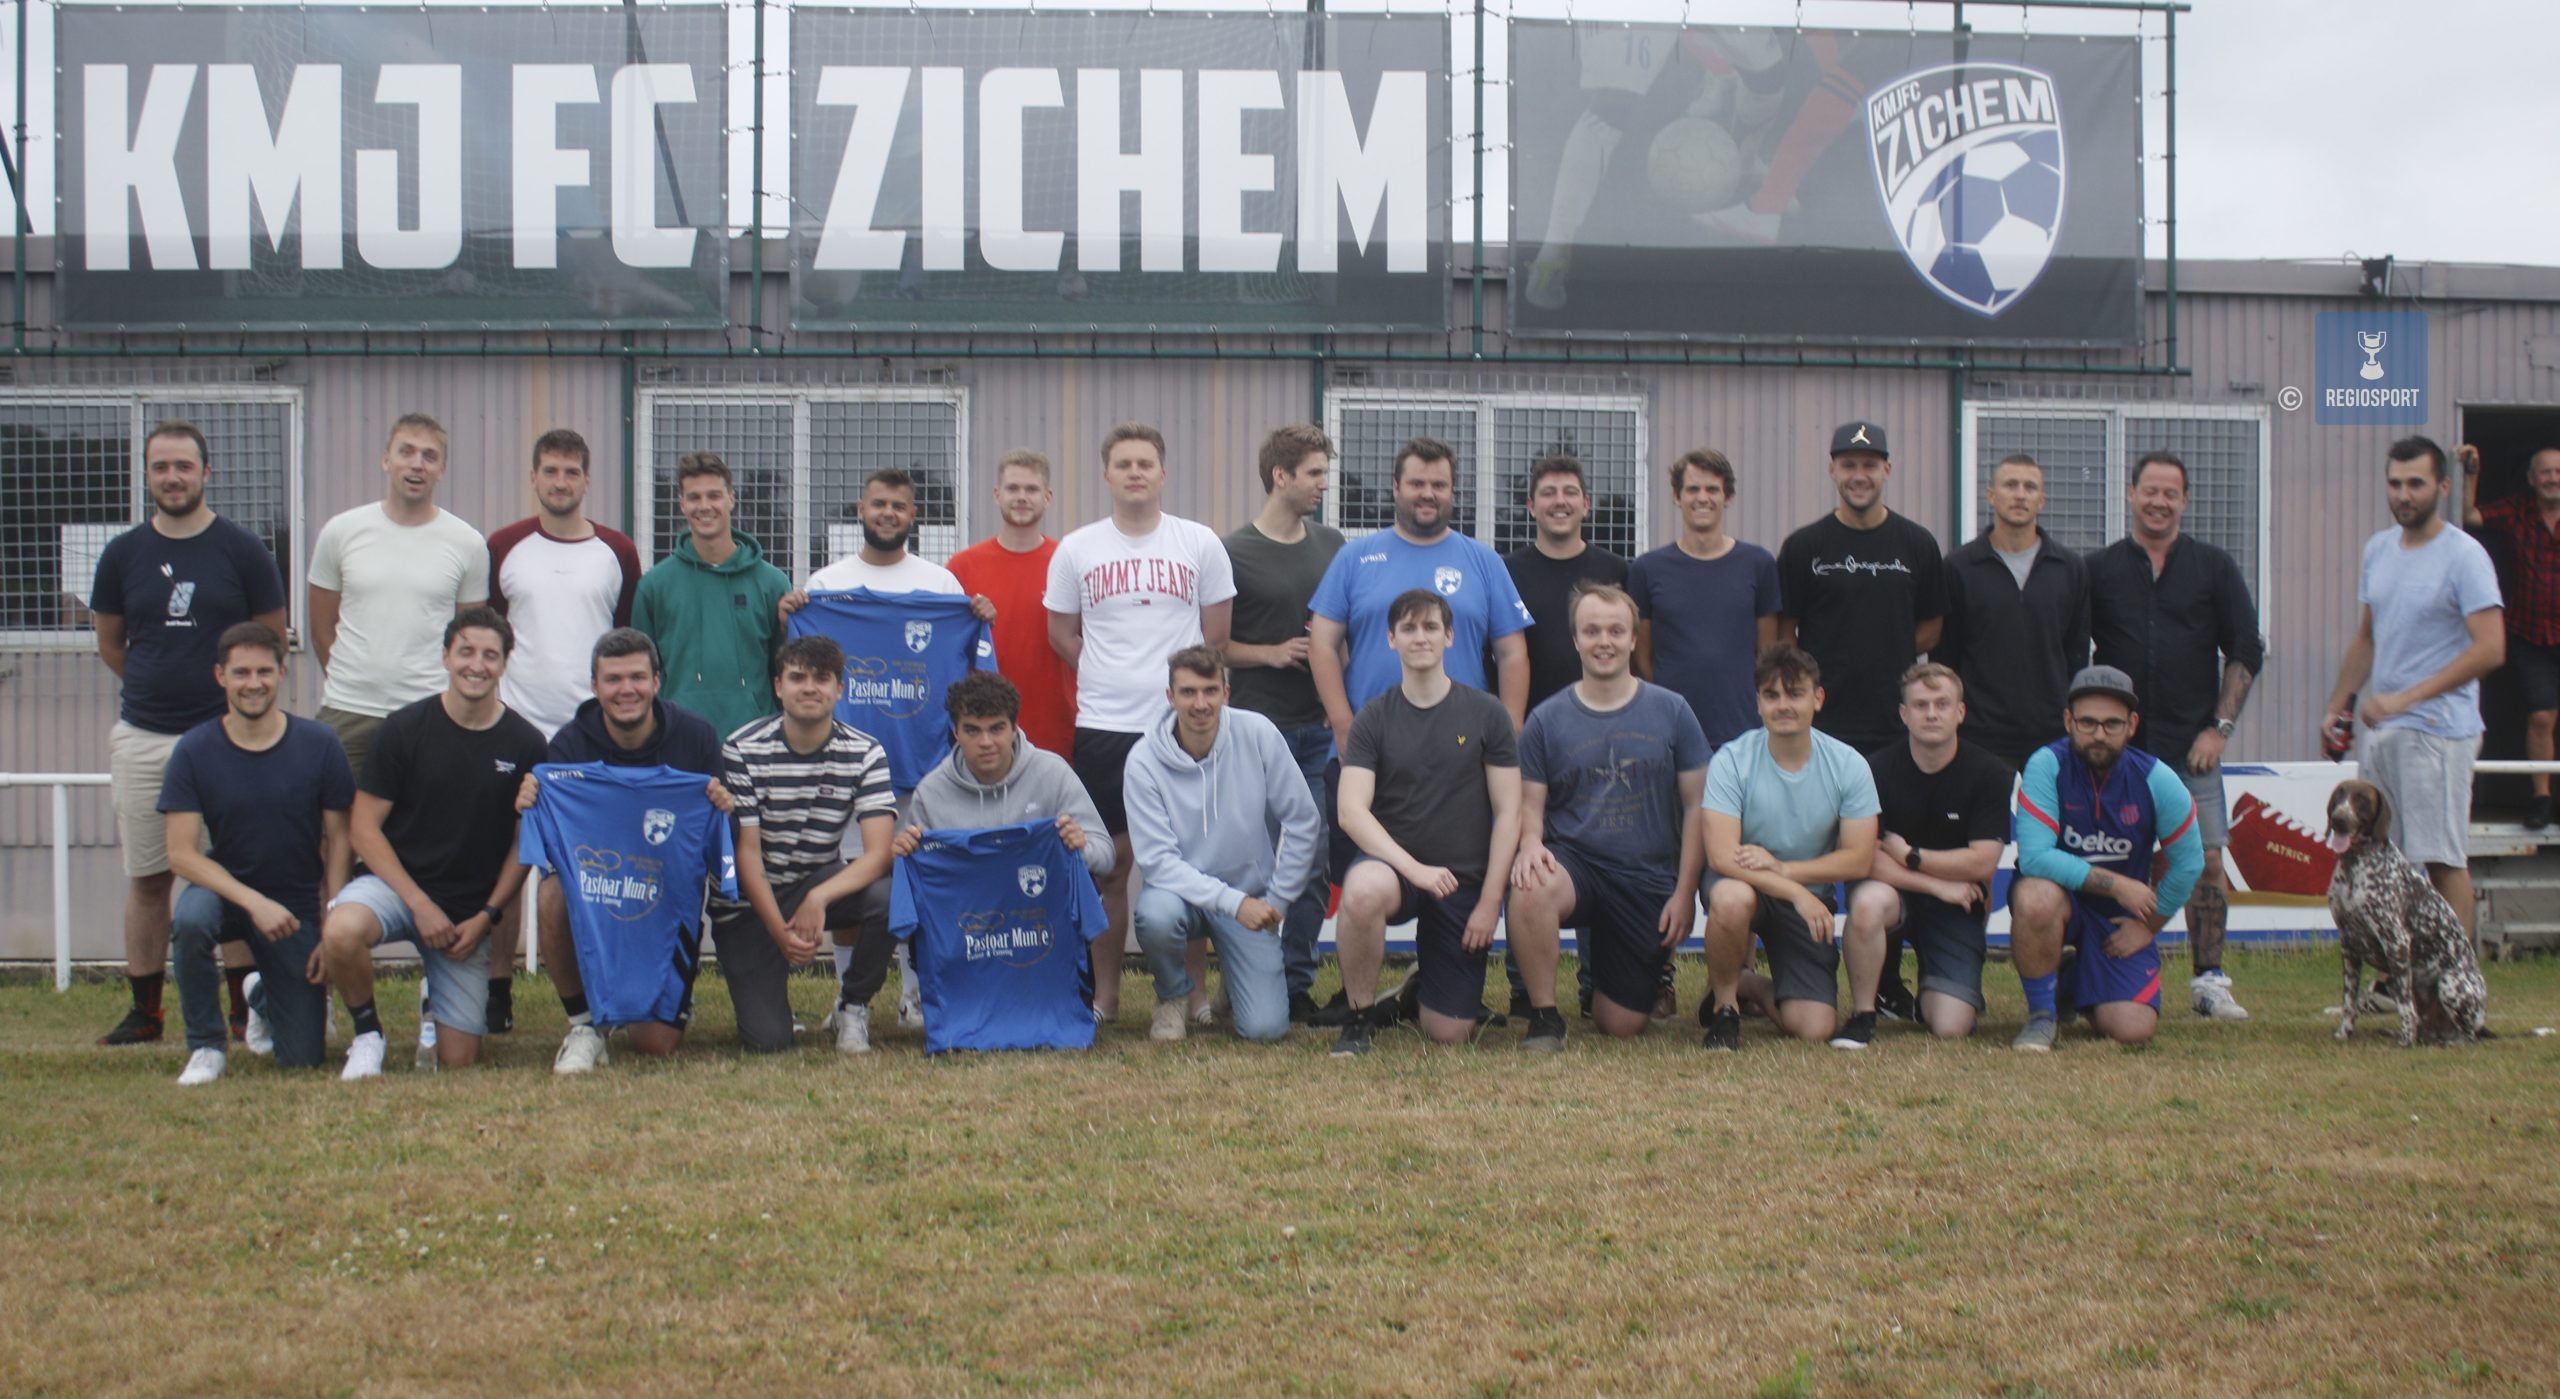 KMJ FC Zichem stopt ermee na 107 jaar